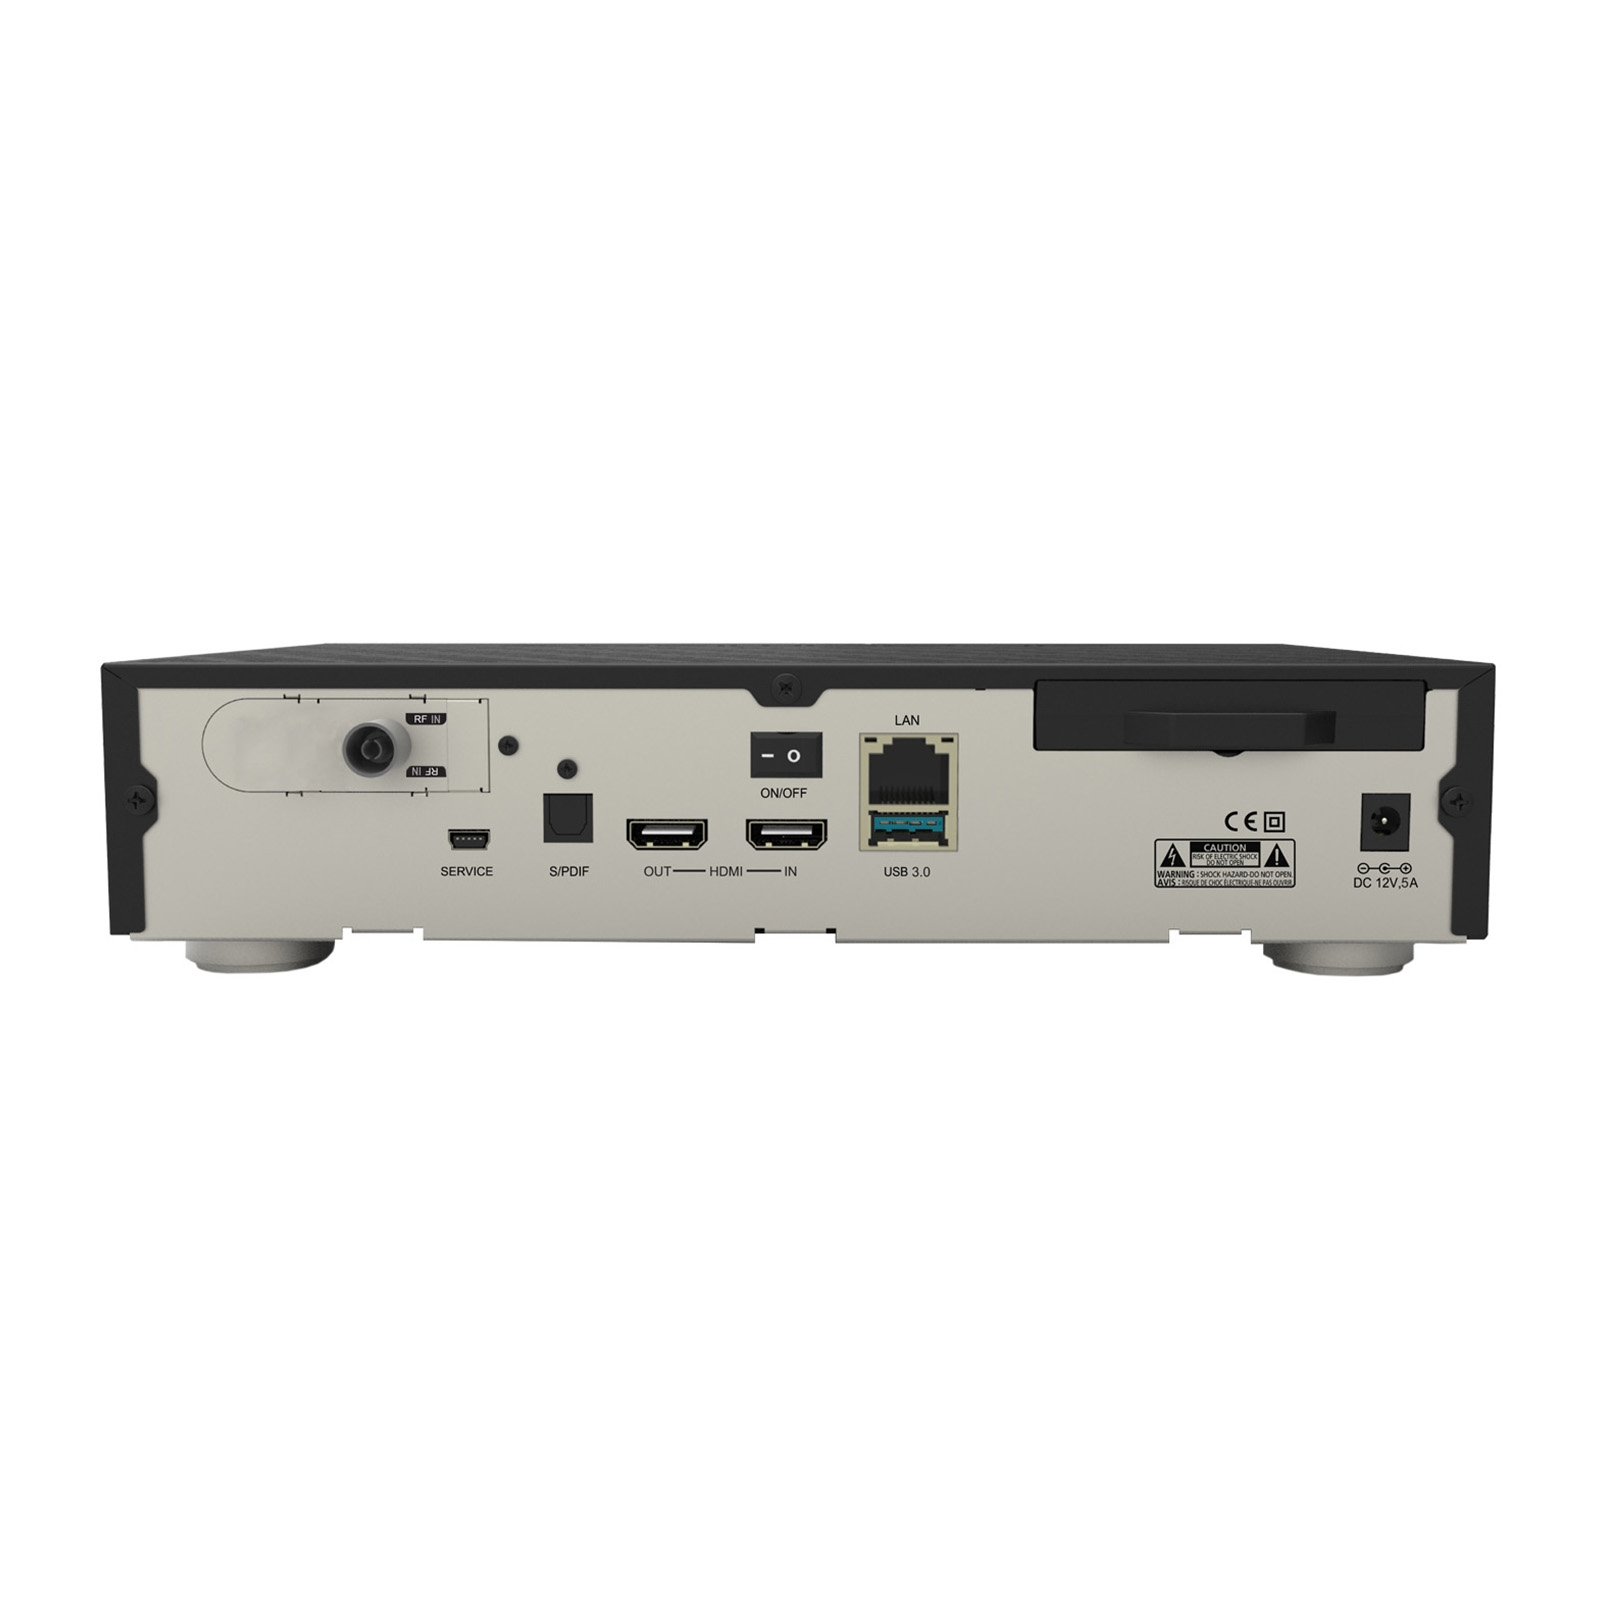 Kabel-Receiver Twin FBC Schwarz) 2TB RC20 Tuner, DREAM DM900 MULTIMEDIA (PVR-Funktion, 1xDVB-C